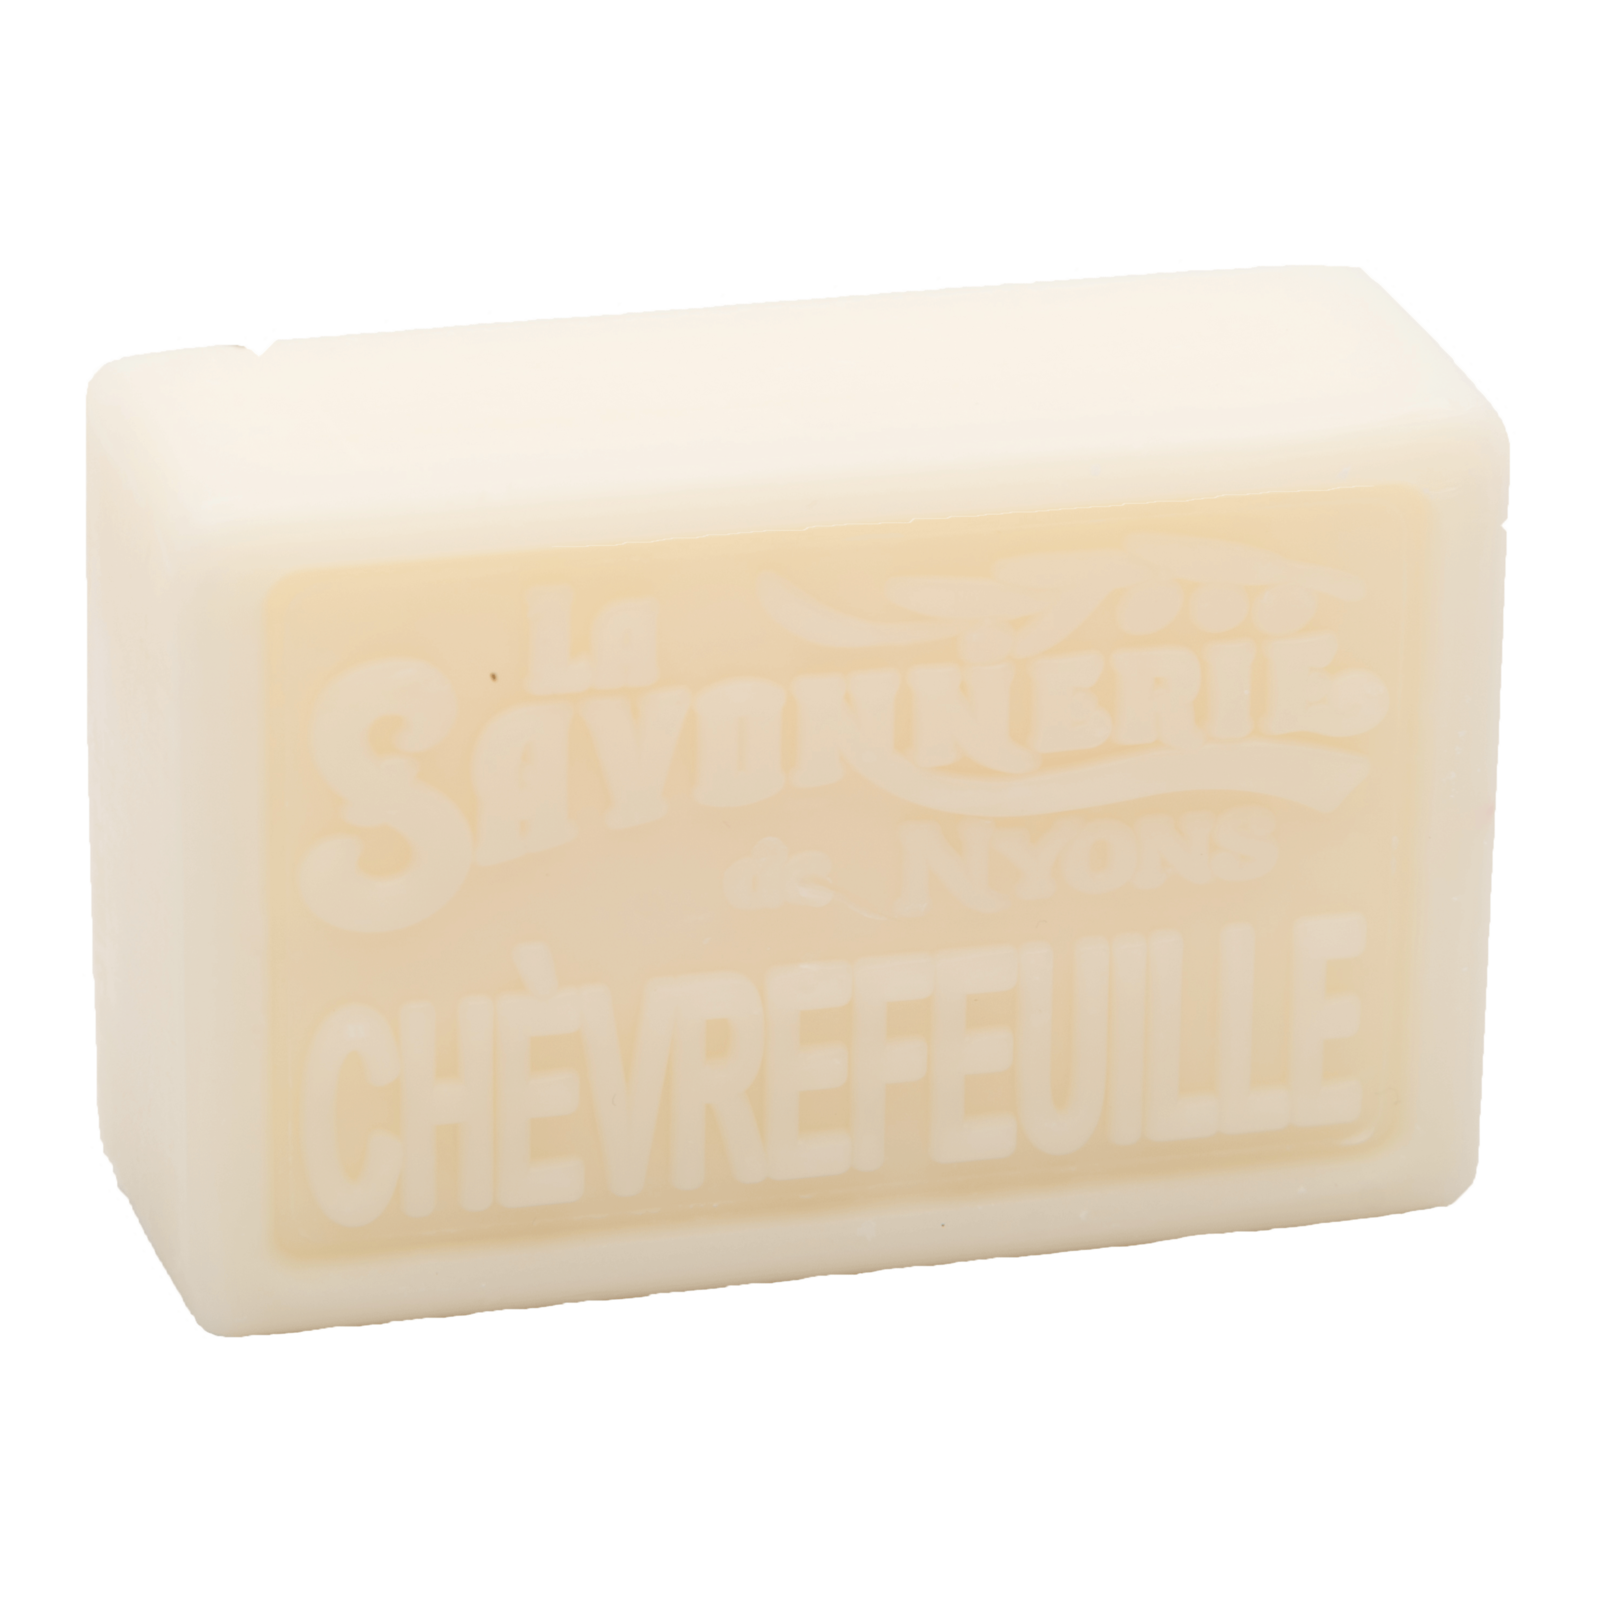 Yellow bar of soap that reads La Savonnerie de Nyons Chevrefuille.